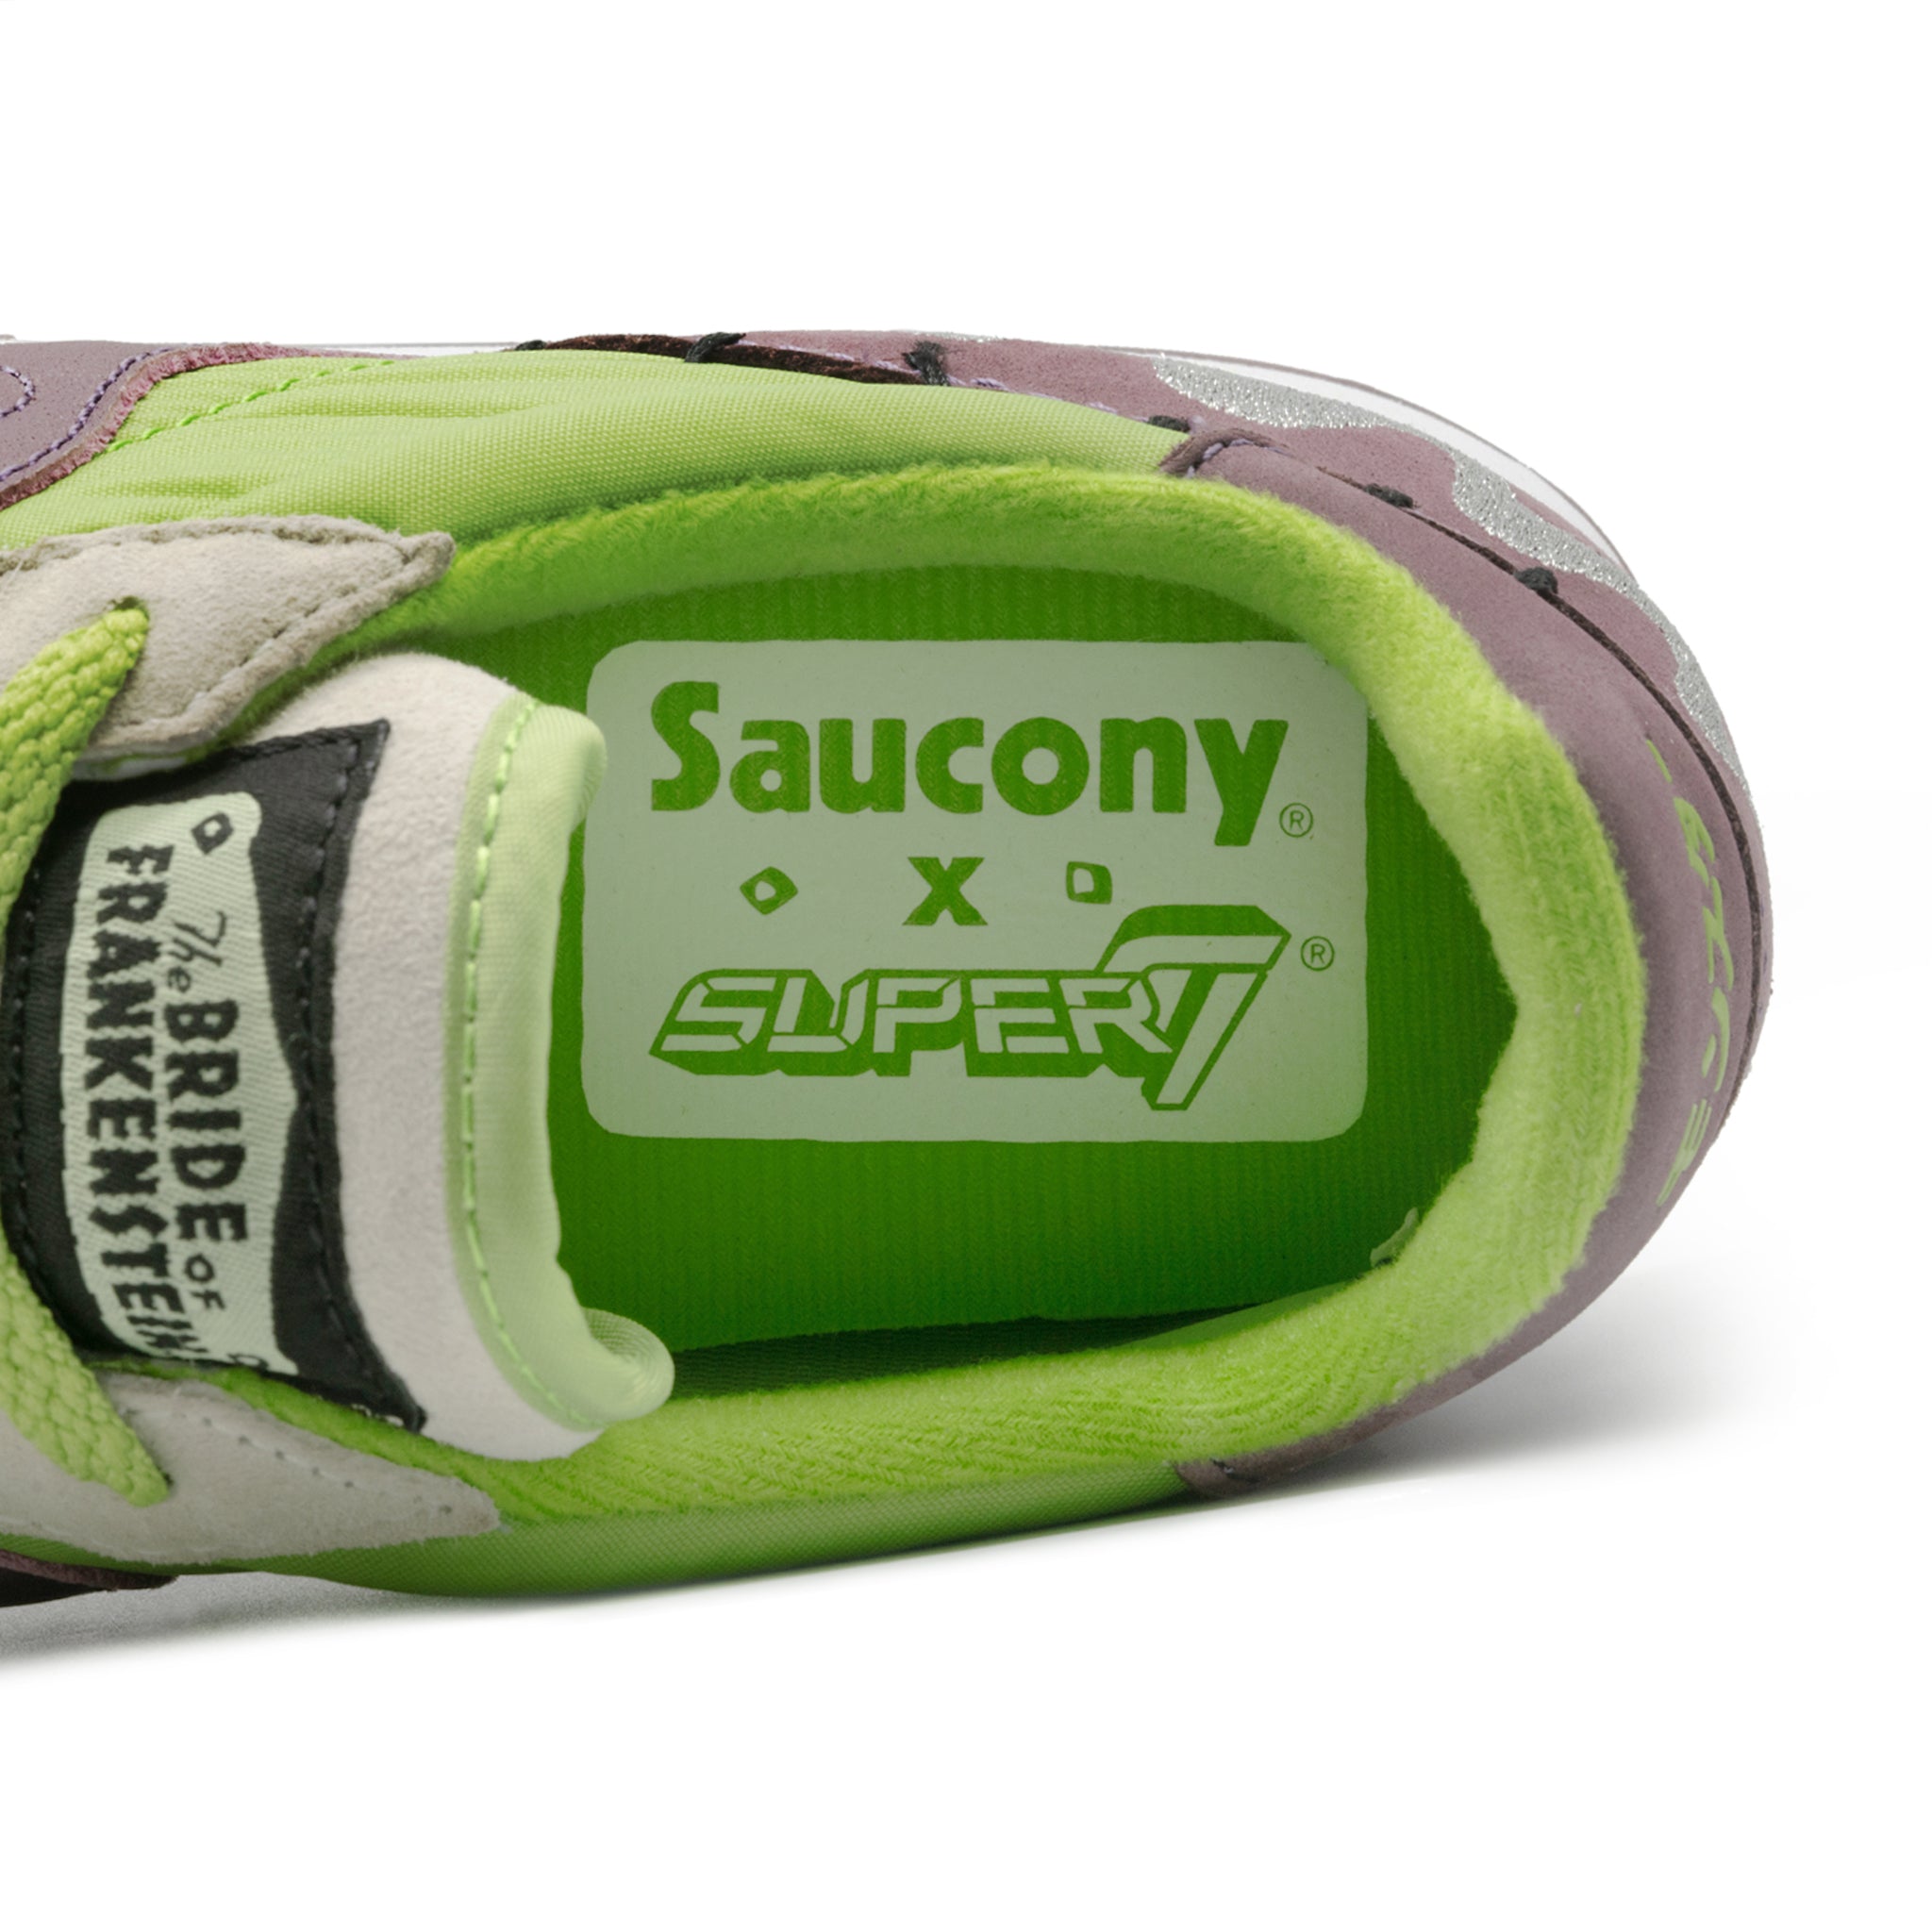 Super7 Saucony Universal Monsters Shoe - Bride of Frankenstein